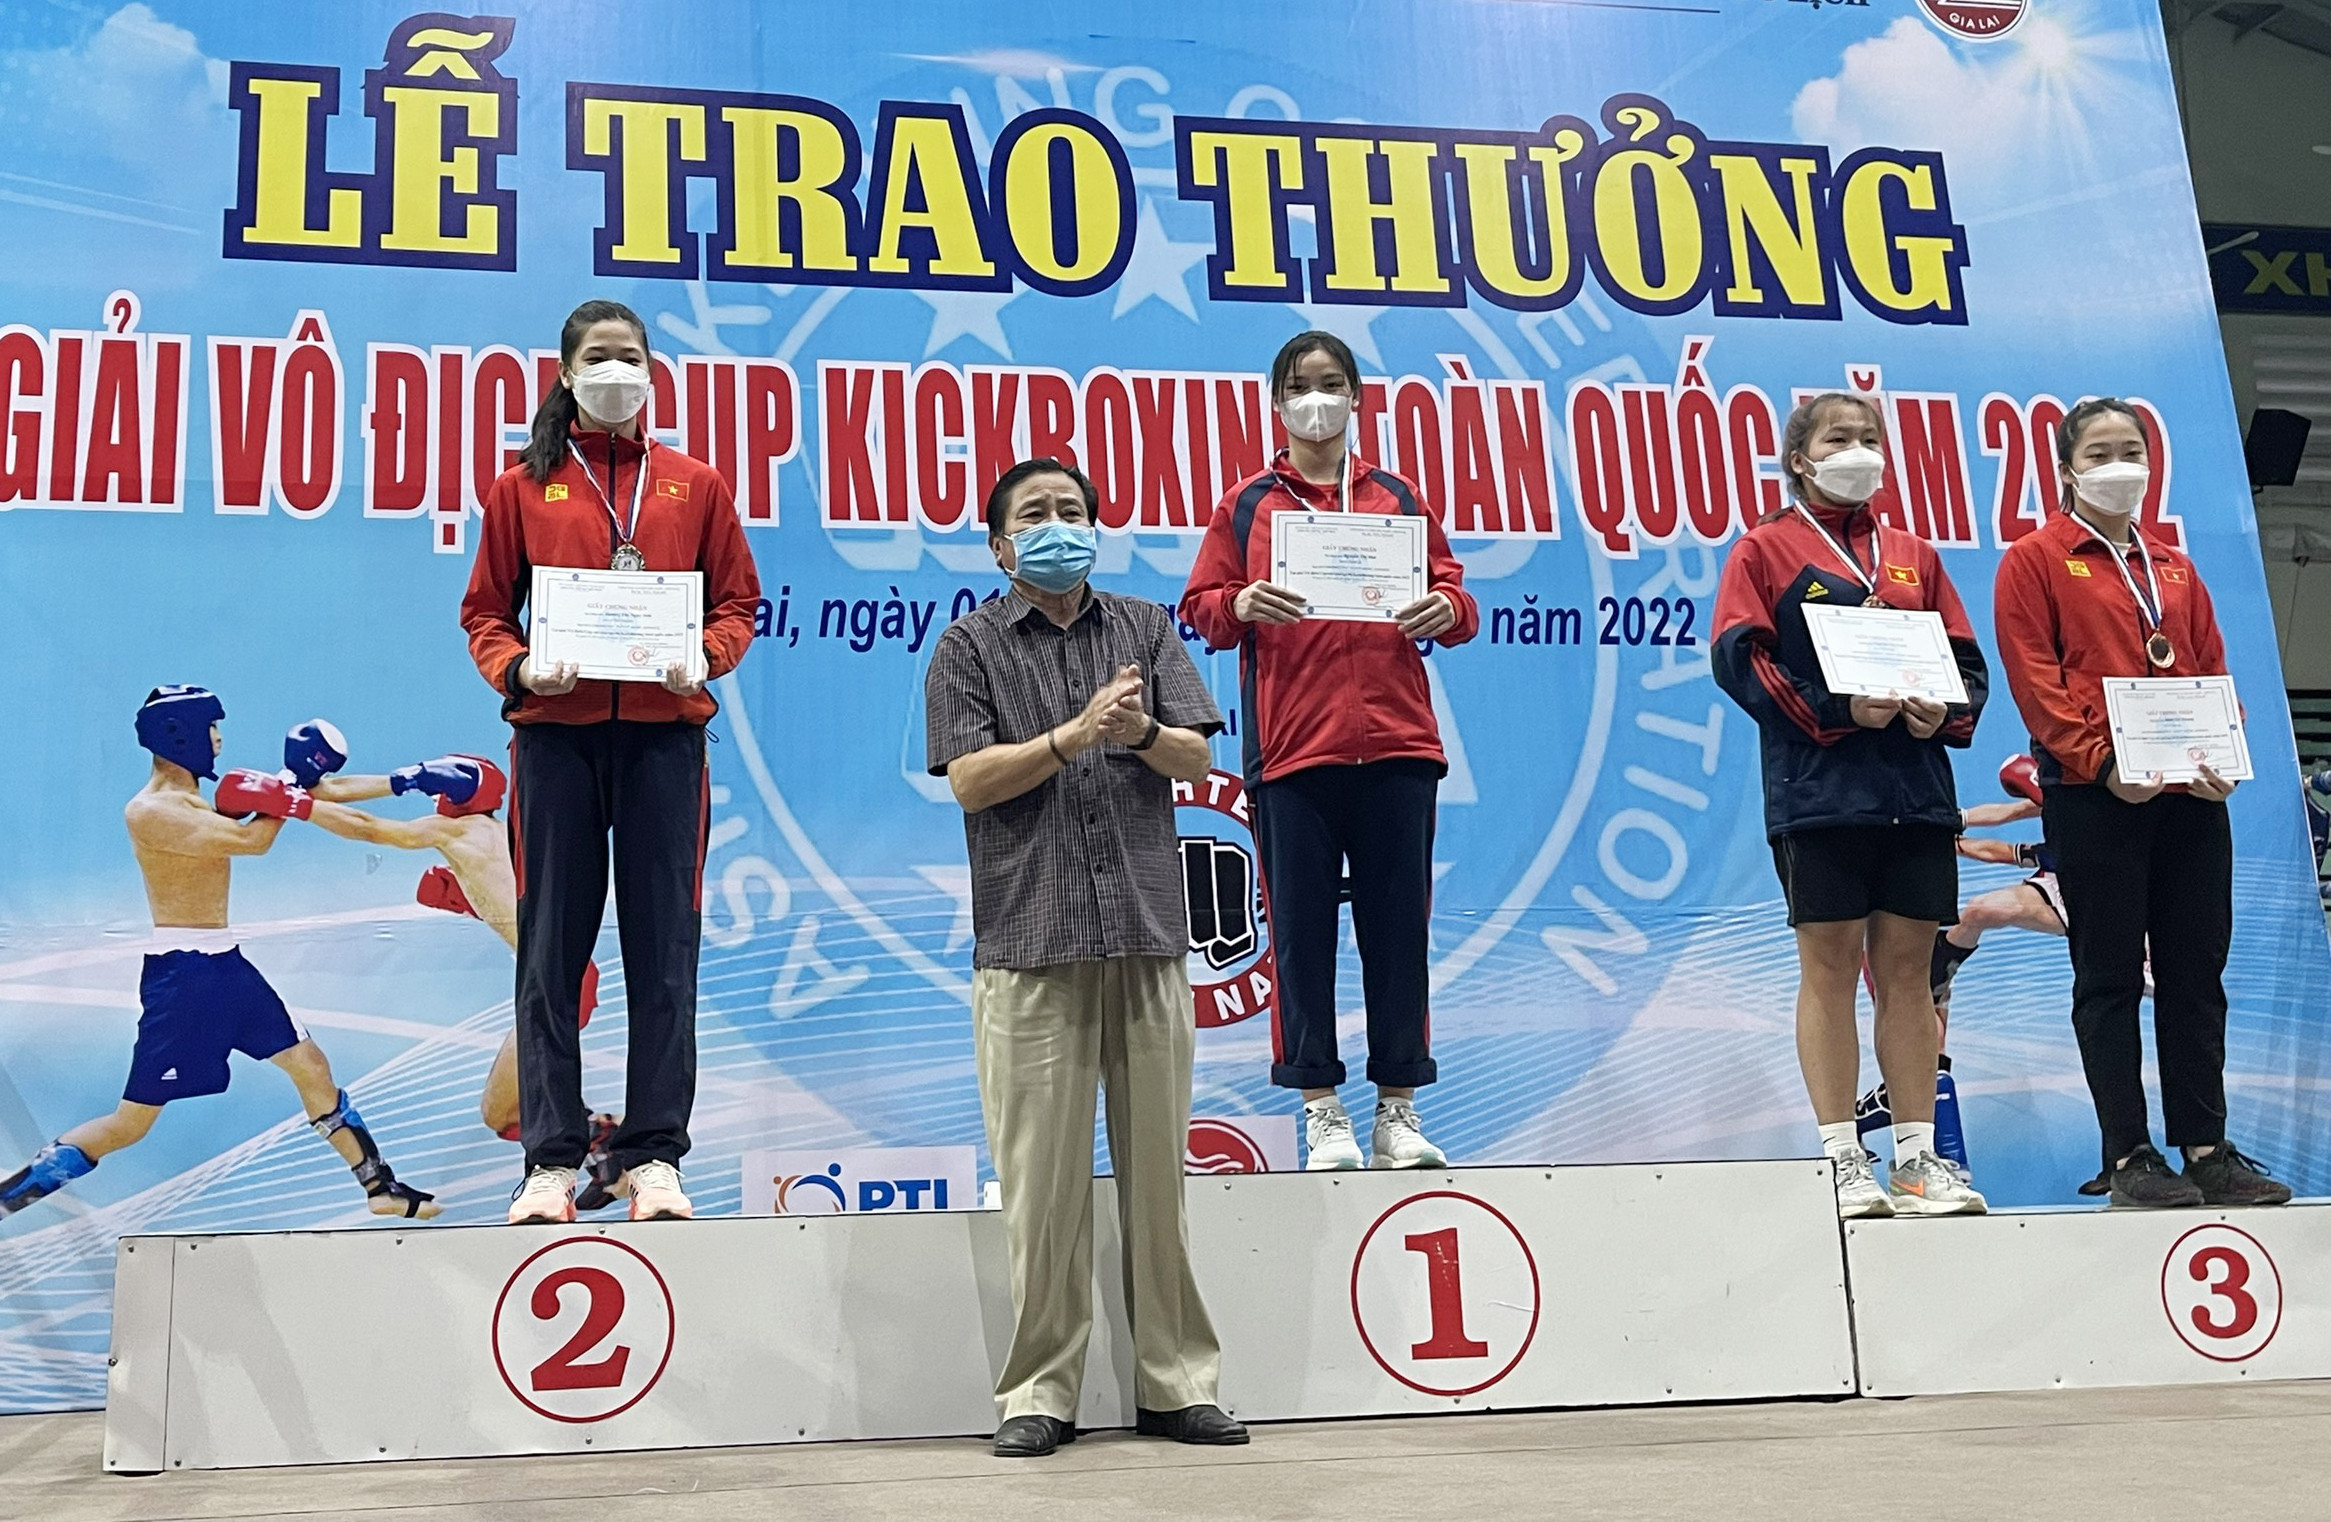 VĐV Nguyễn Thị Mai xuất sắc dành tấm huy chương Vàng Kickboxing cho đoàn Nghệ An. Ảnh: PV